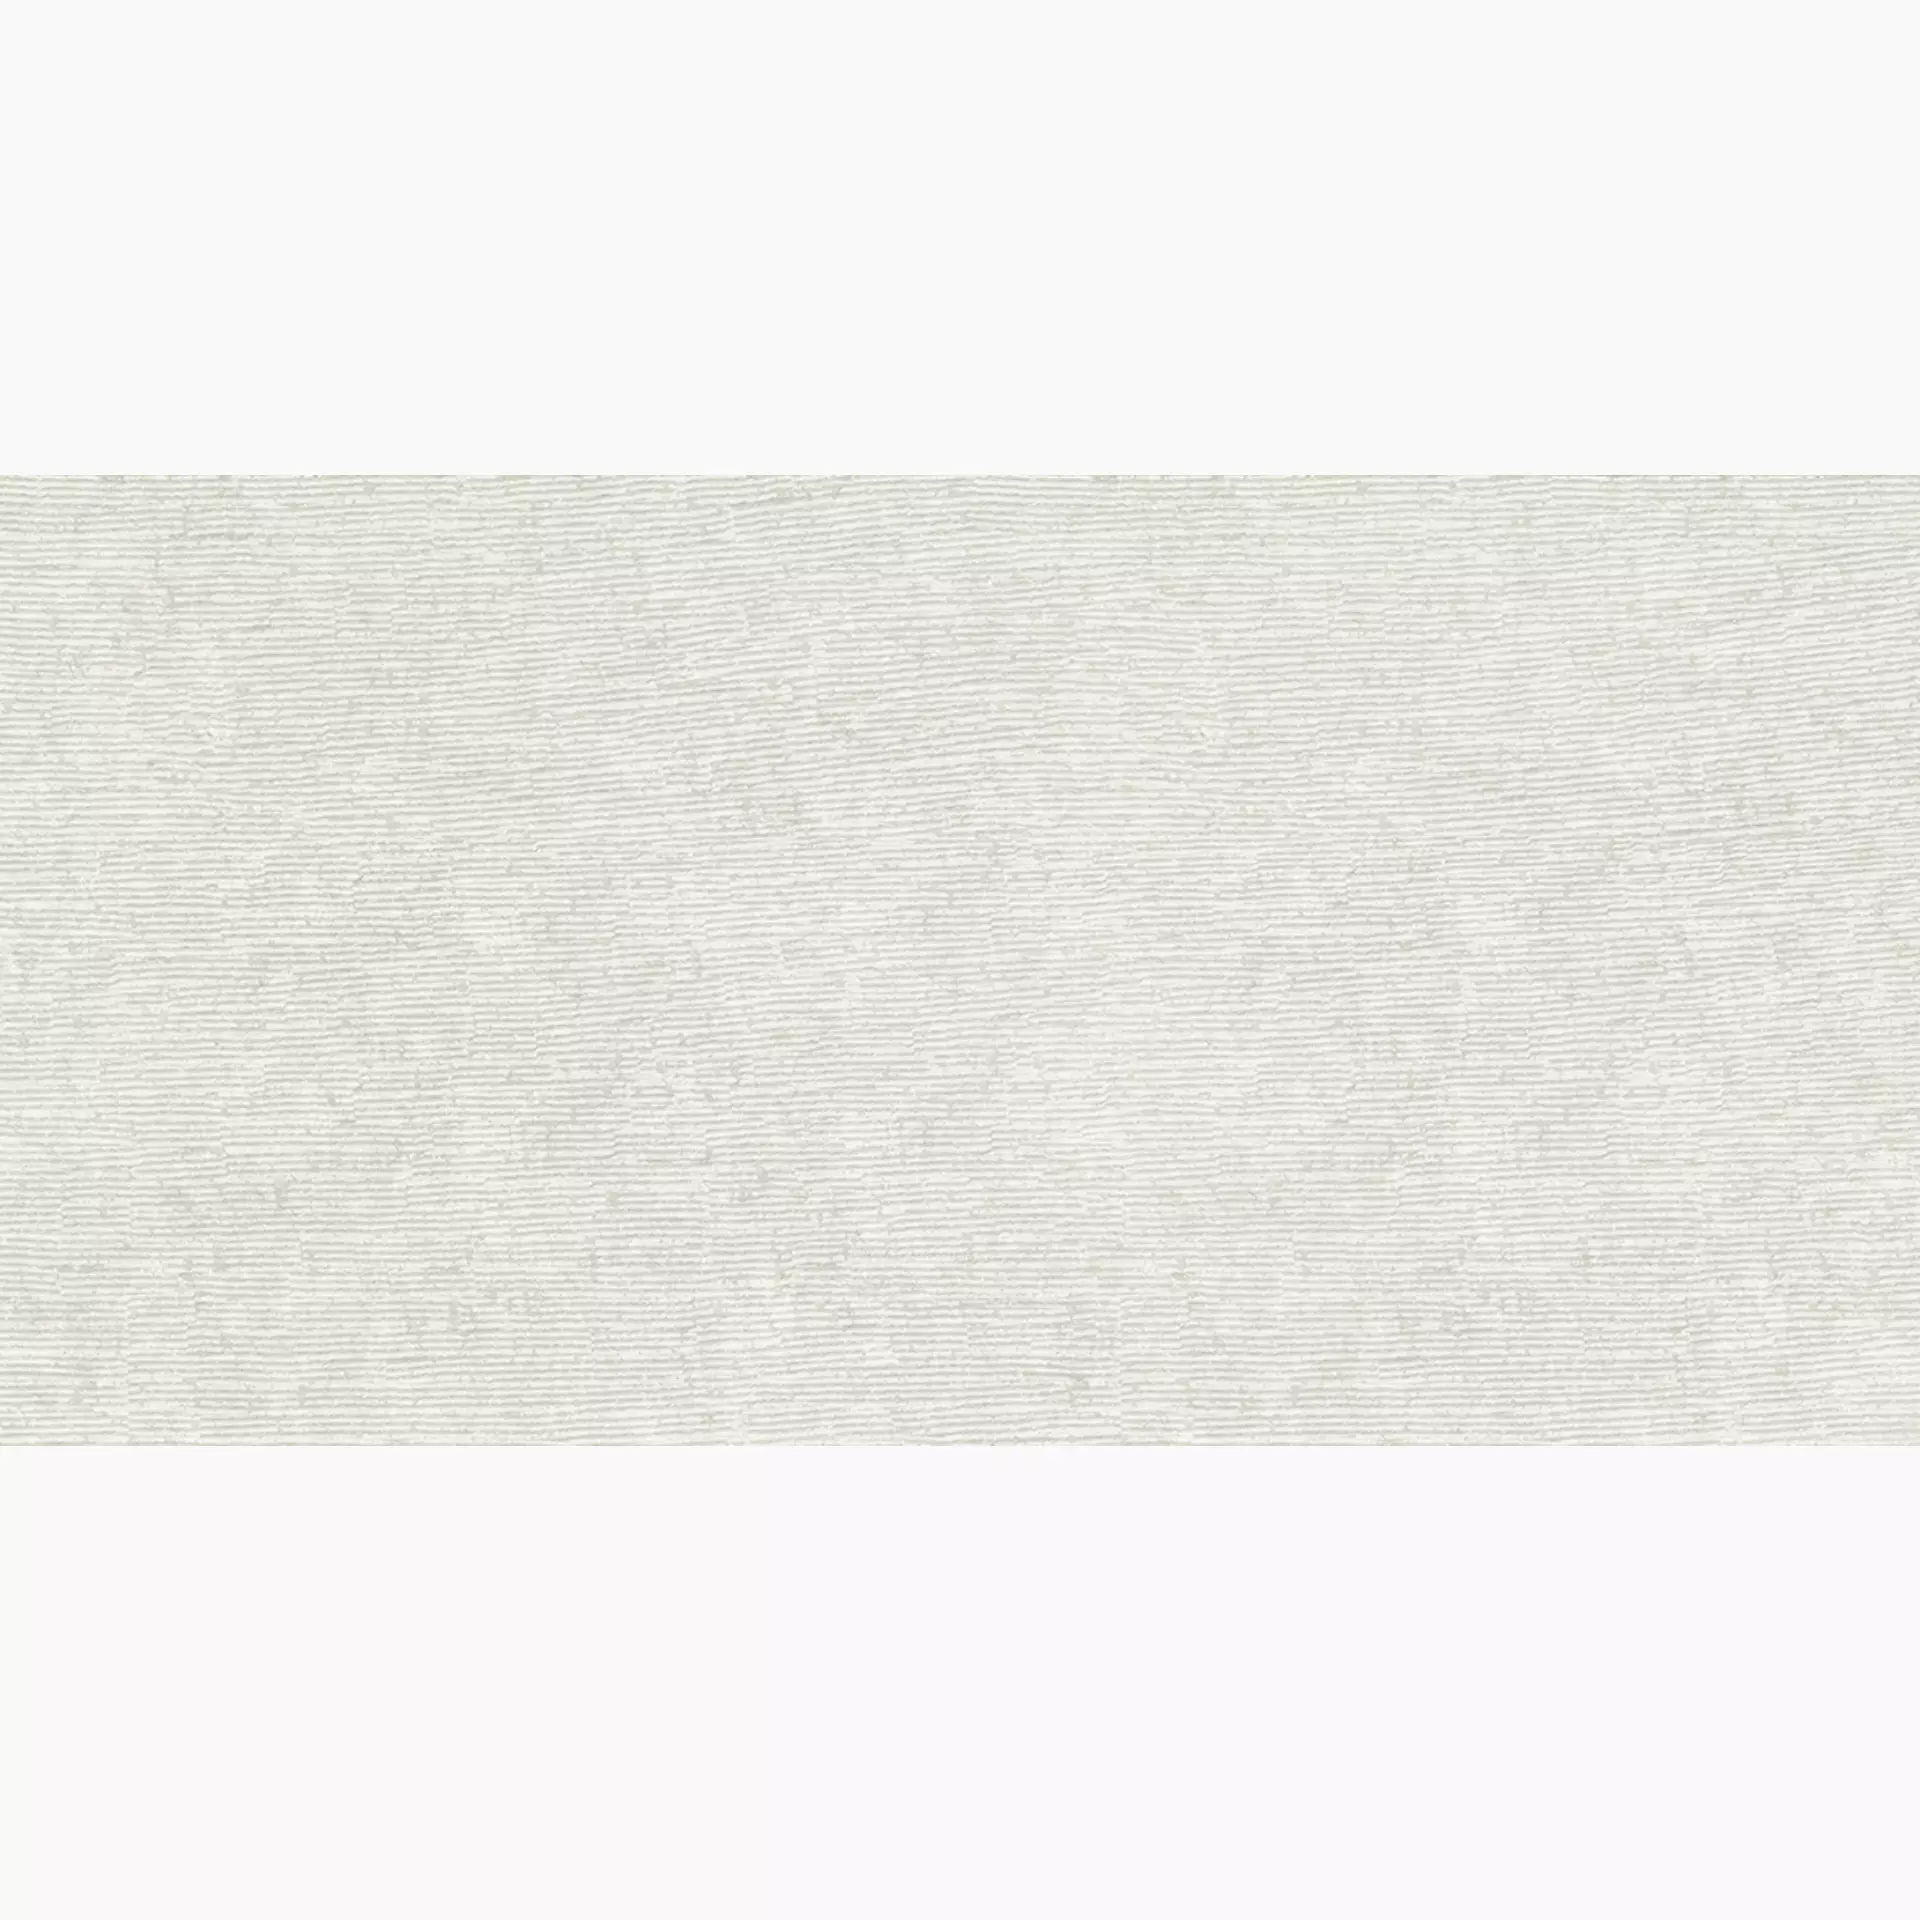 Ergon Stone Talk Rullata White Naturale Rullata White ED5S natur 60x120cm rektifiziert 9,5mm